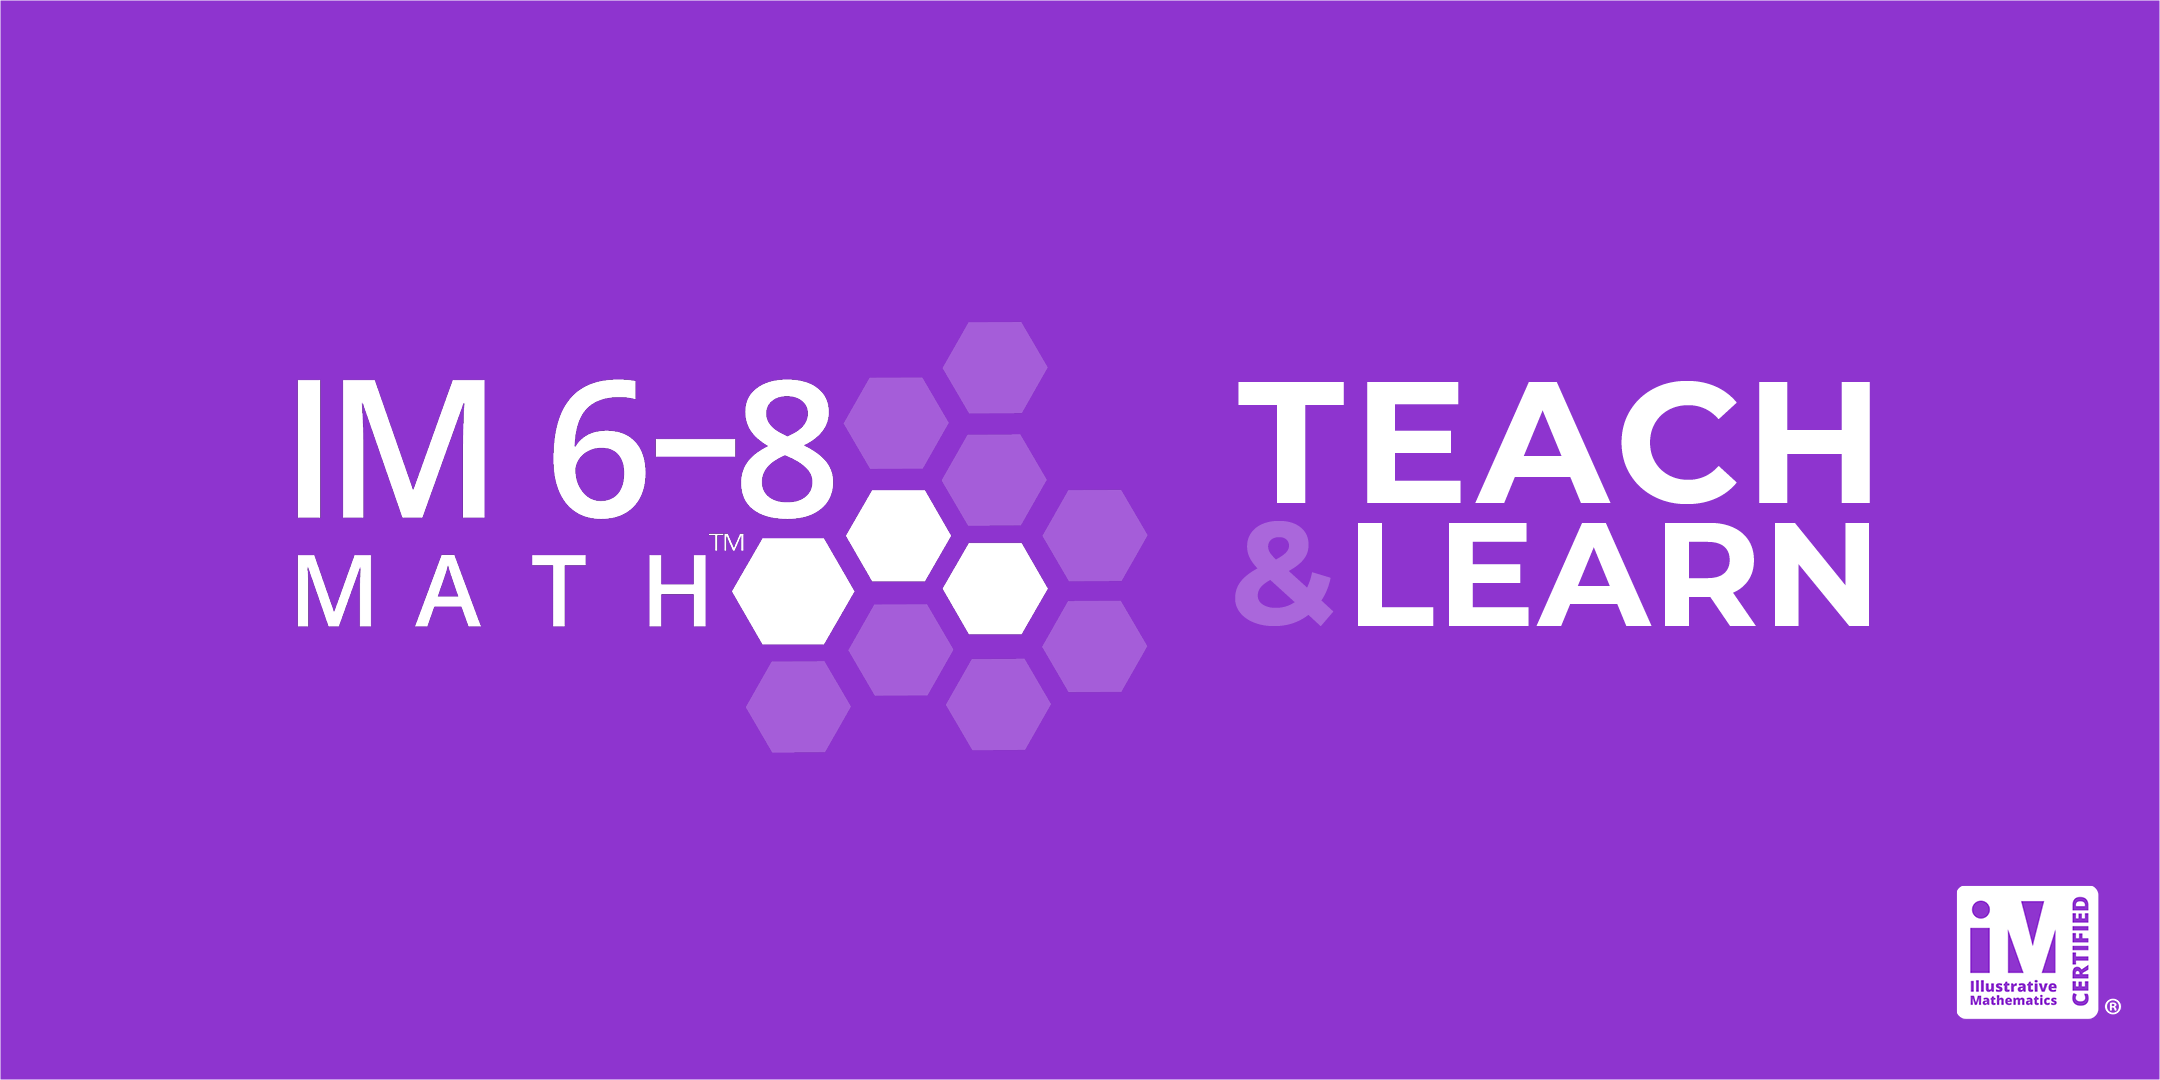 IM 6-8 Math: Teach & Learn